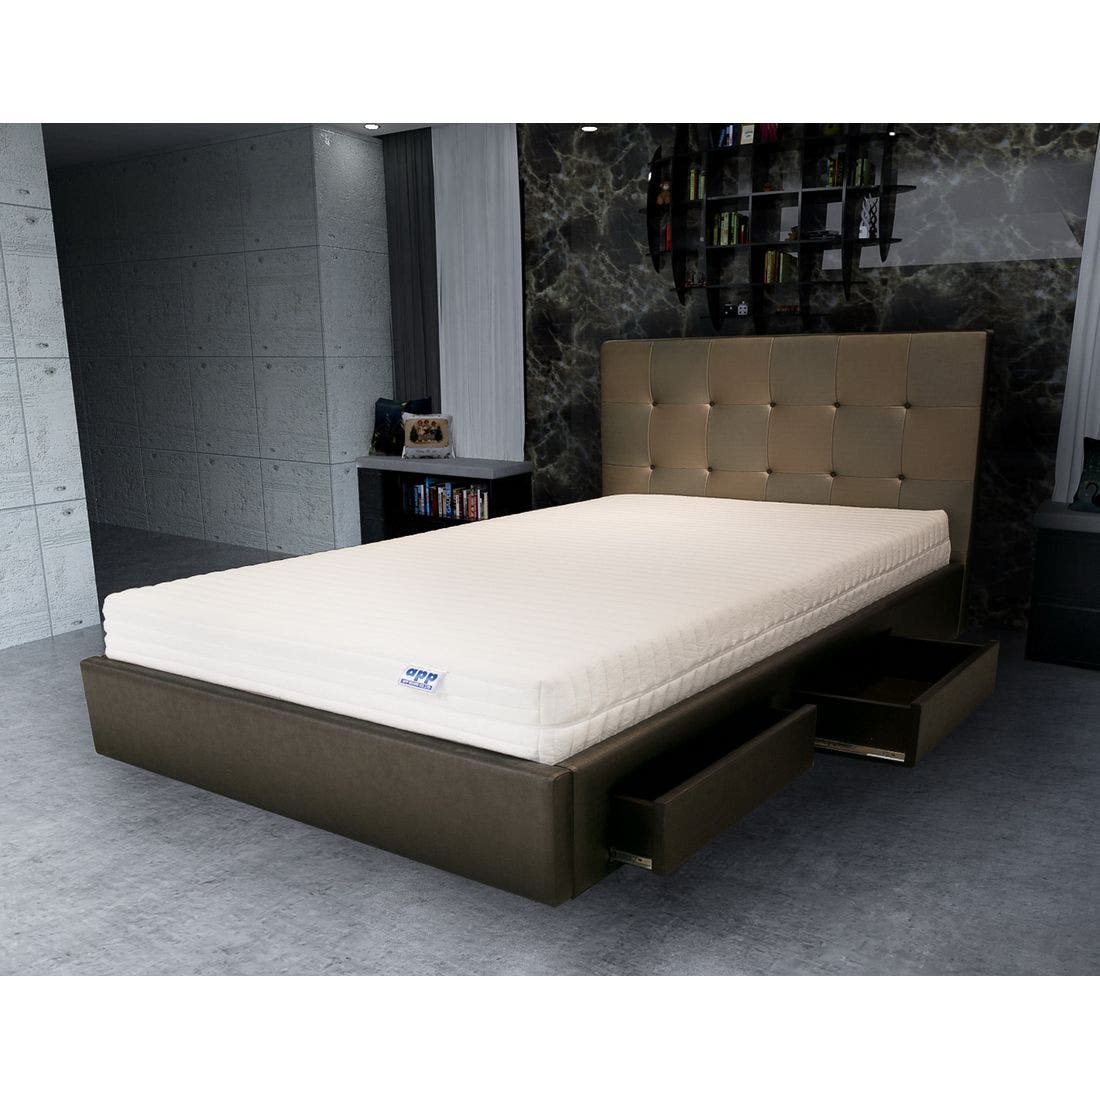 39001624-mattress-bedding-mattresses-latex-mattresses-31